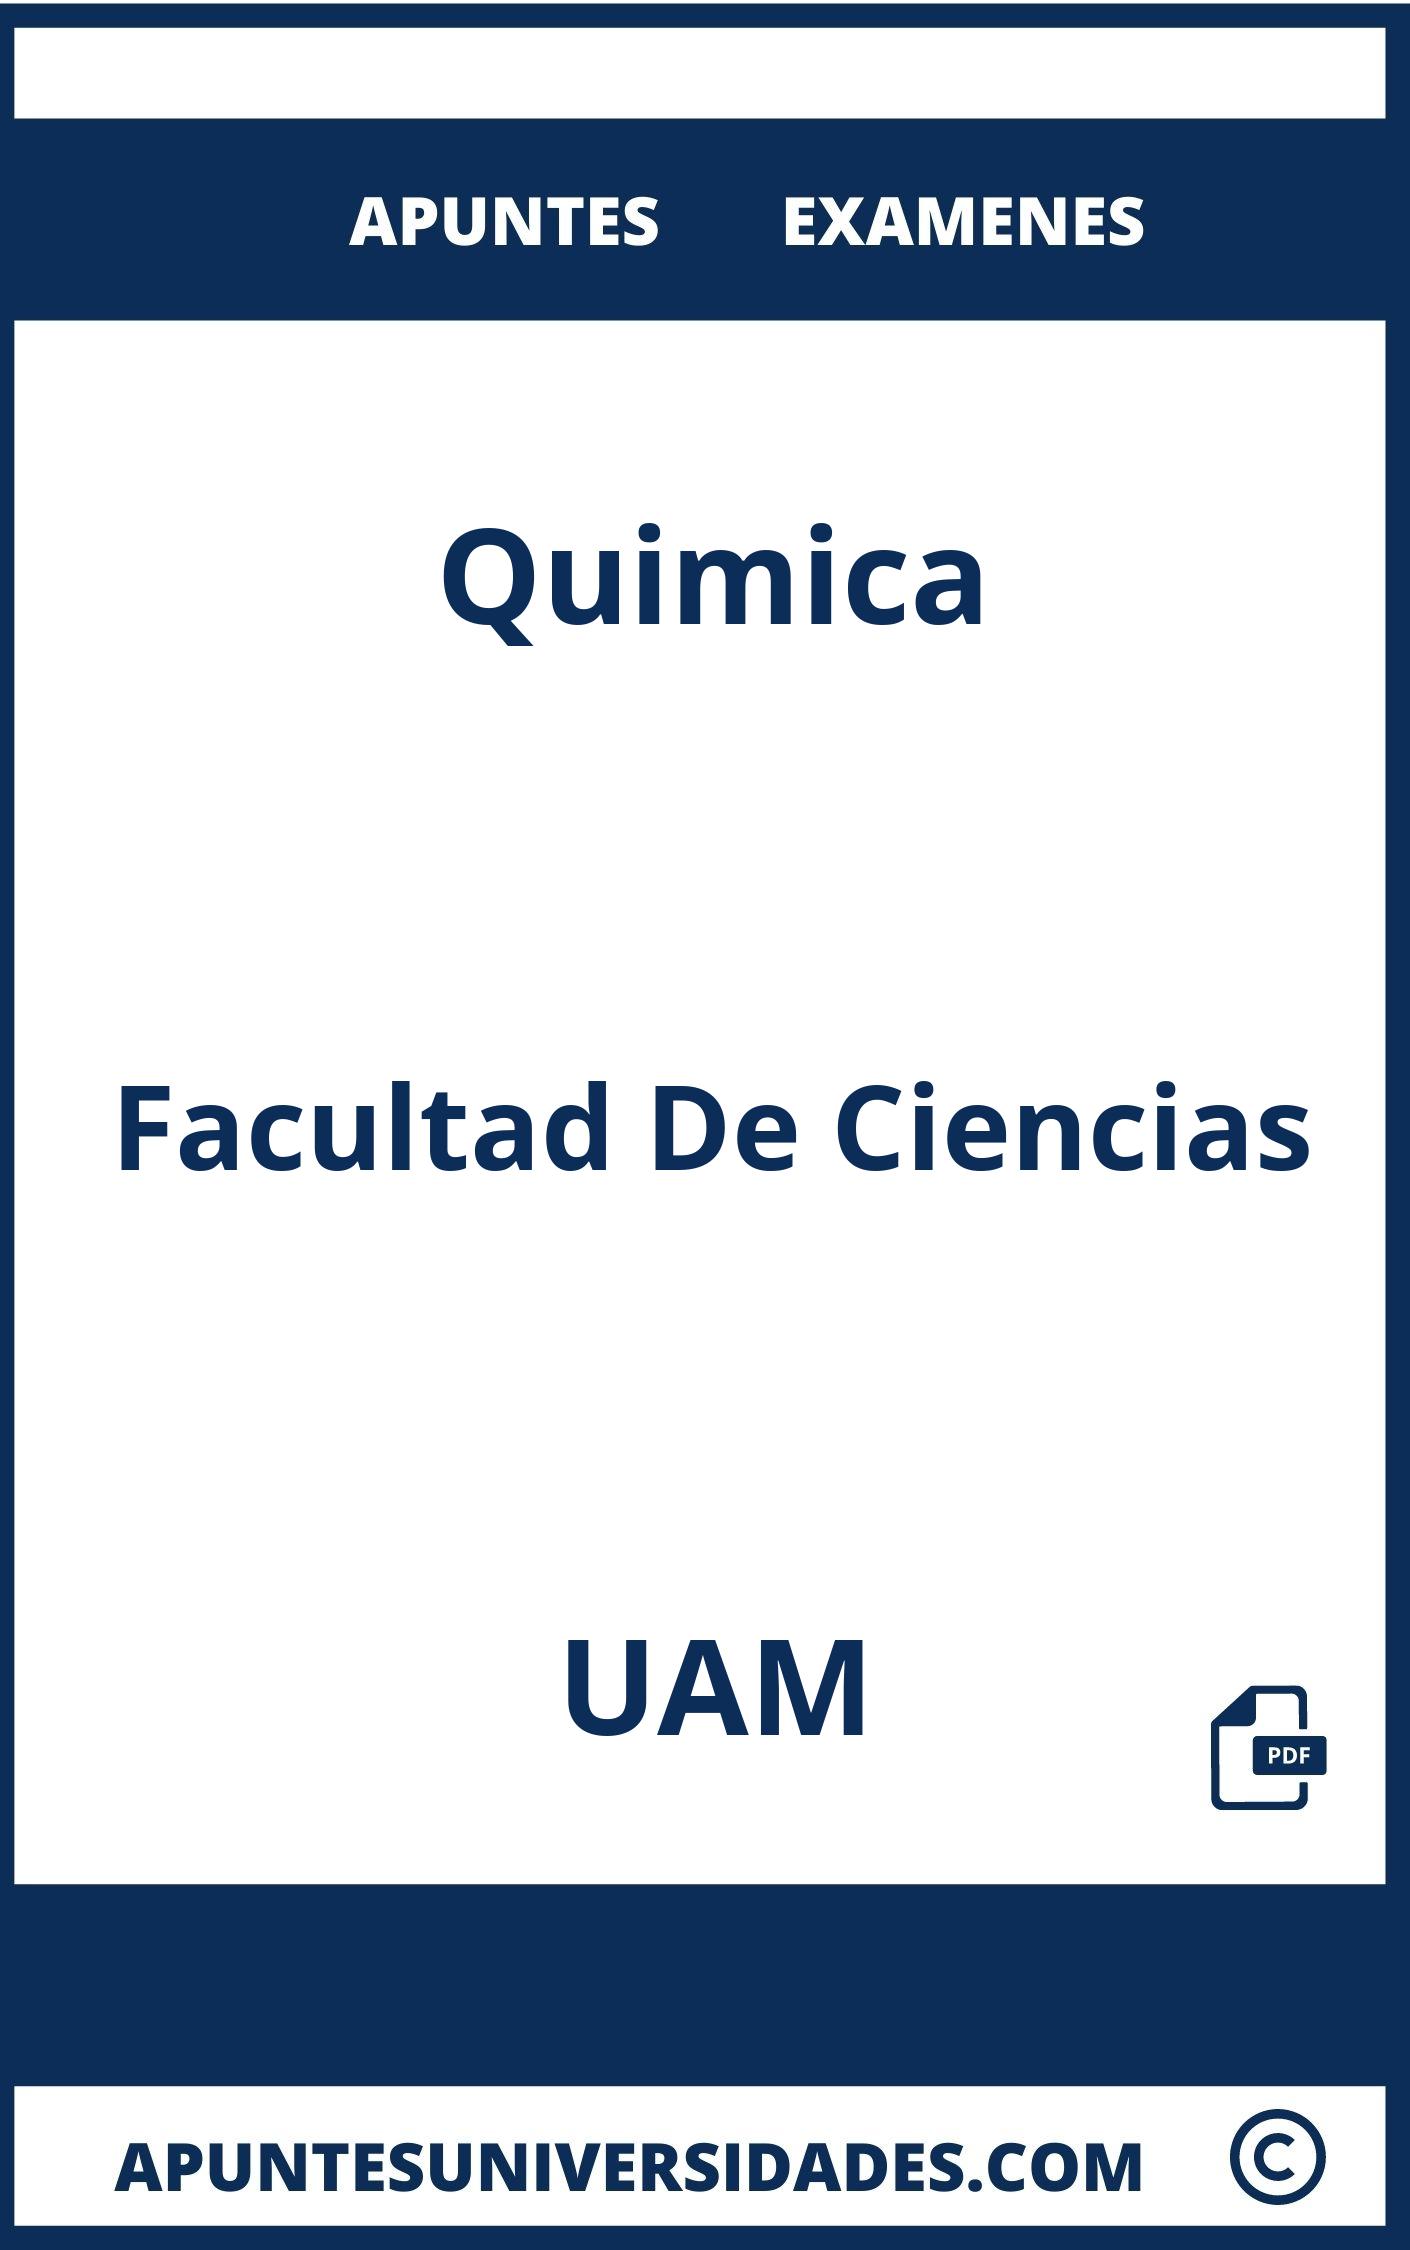 Examenes Apuntes Quimica UAM